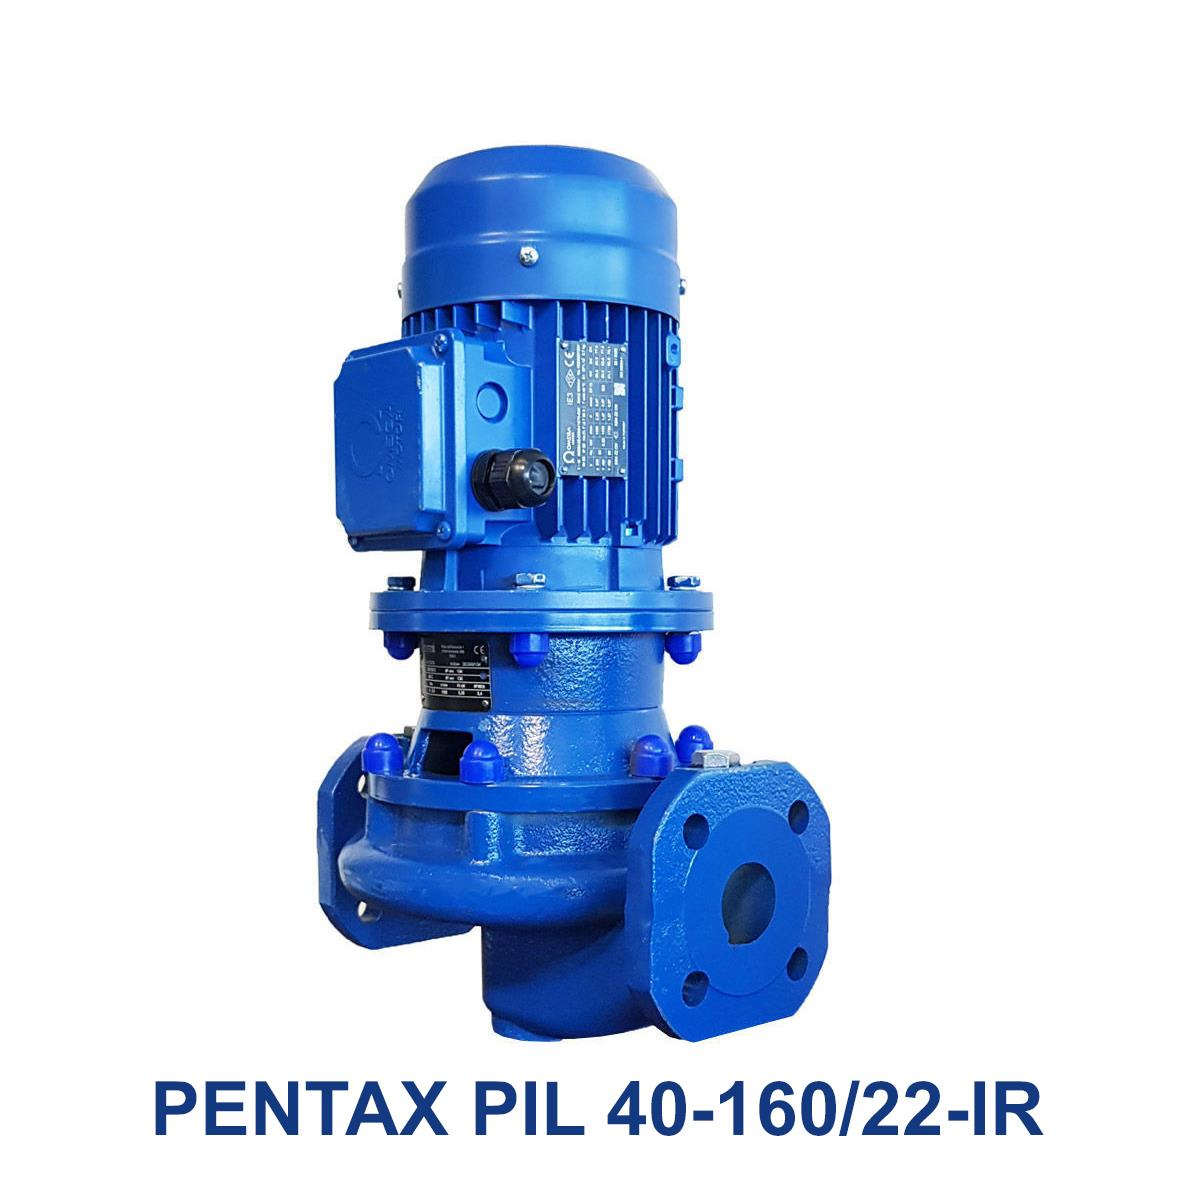 PENTAX-PIL-40-160-22-IR